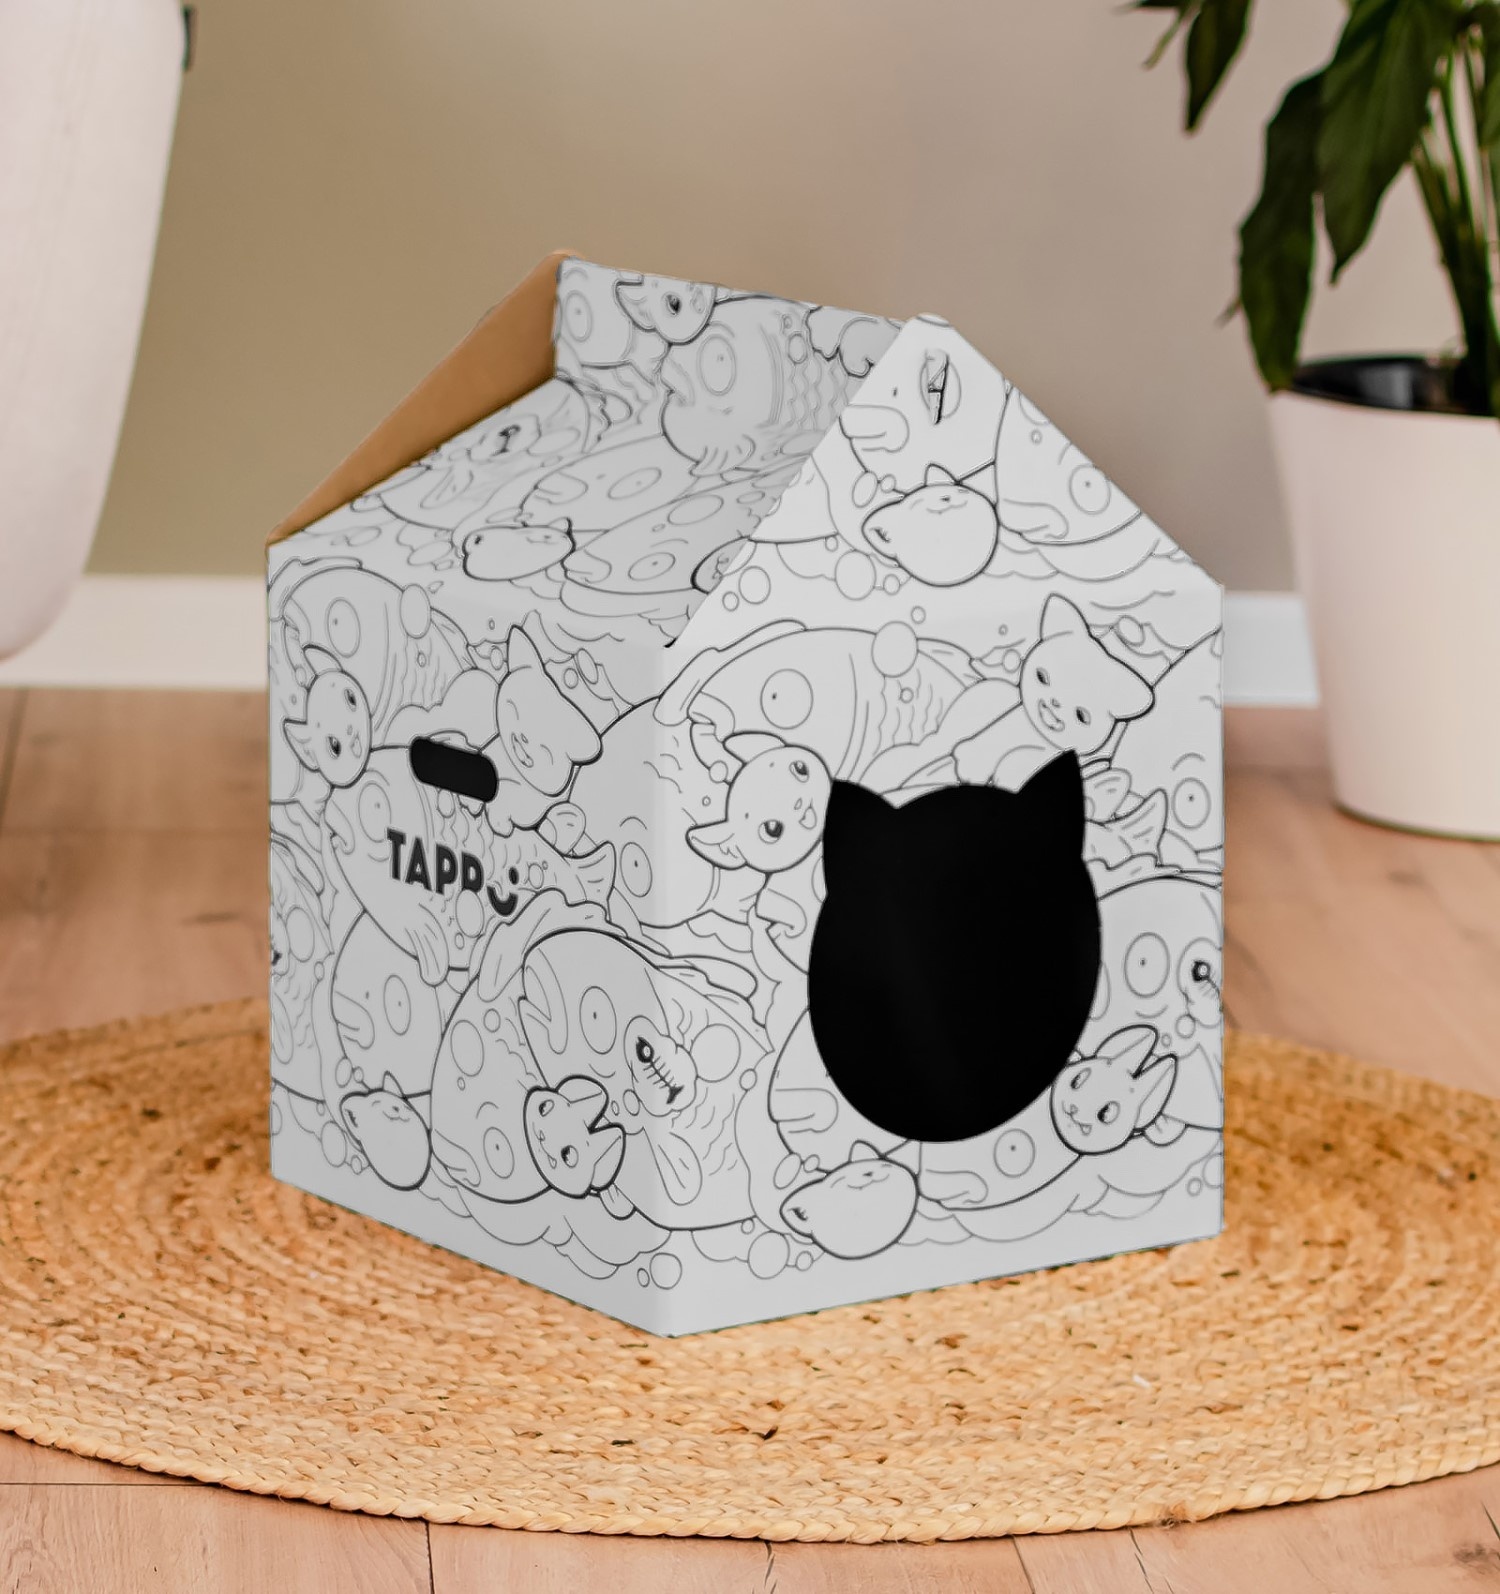 Tappi когтеточки Tappi когтеточки картонный домик для животных Бакэнэко (360 г)